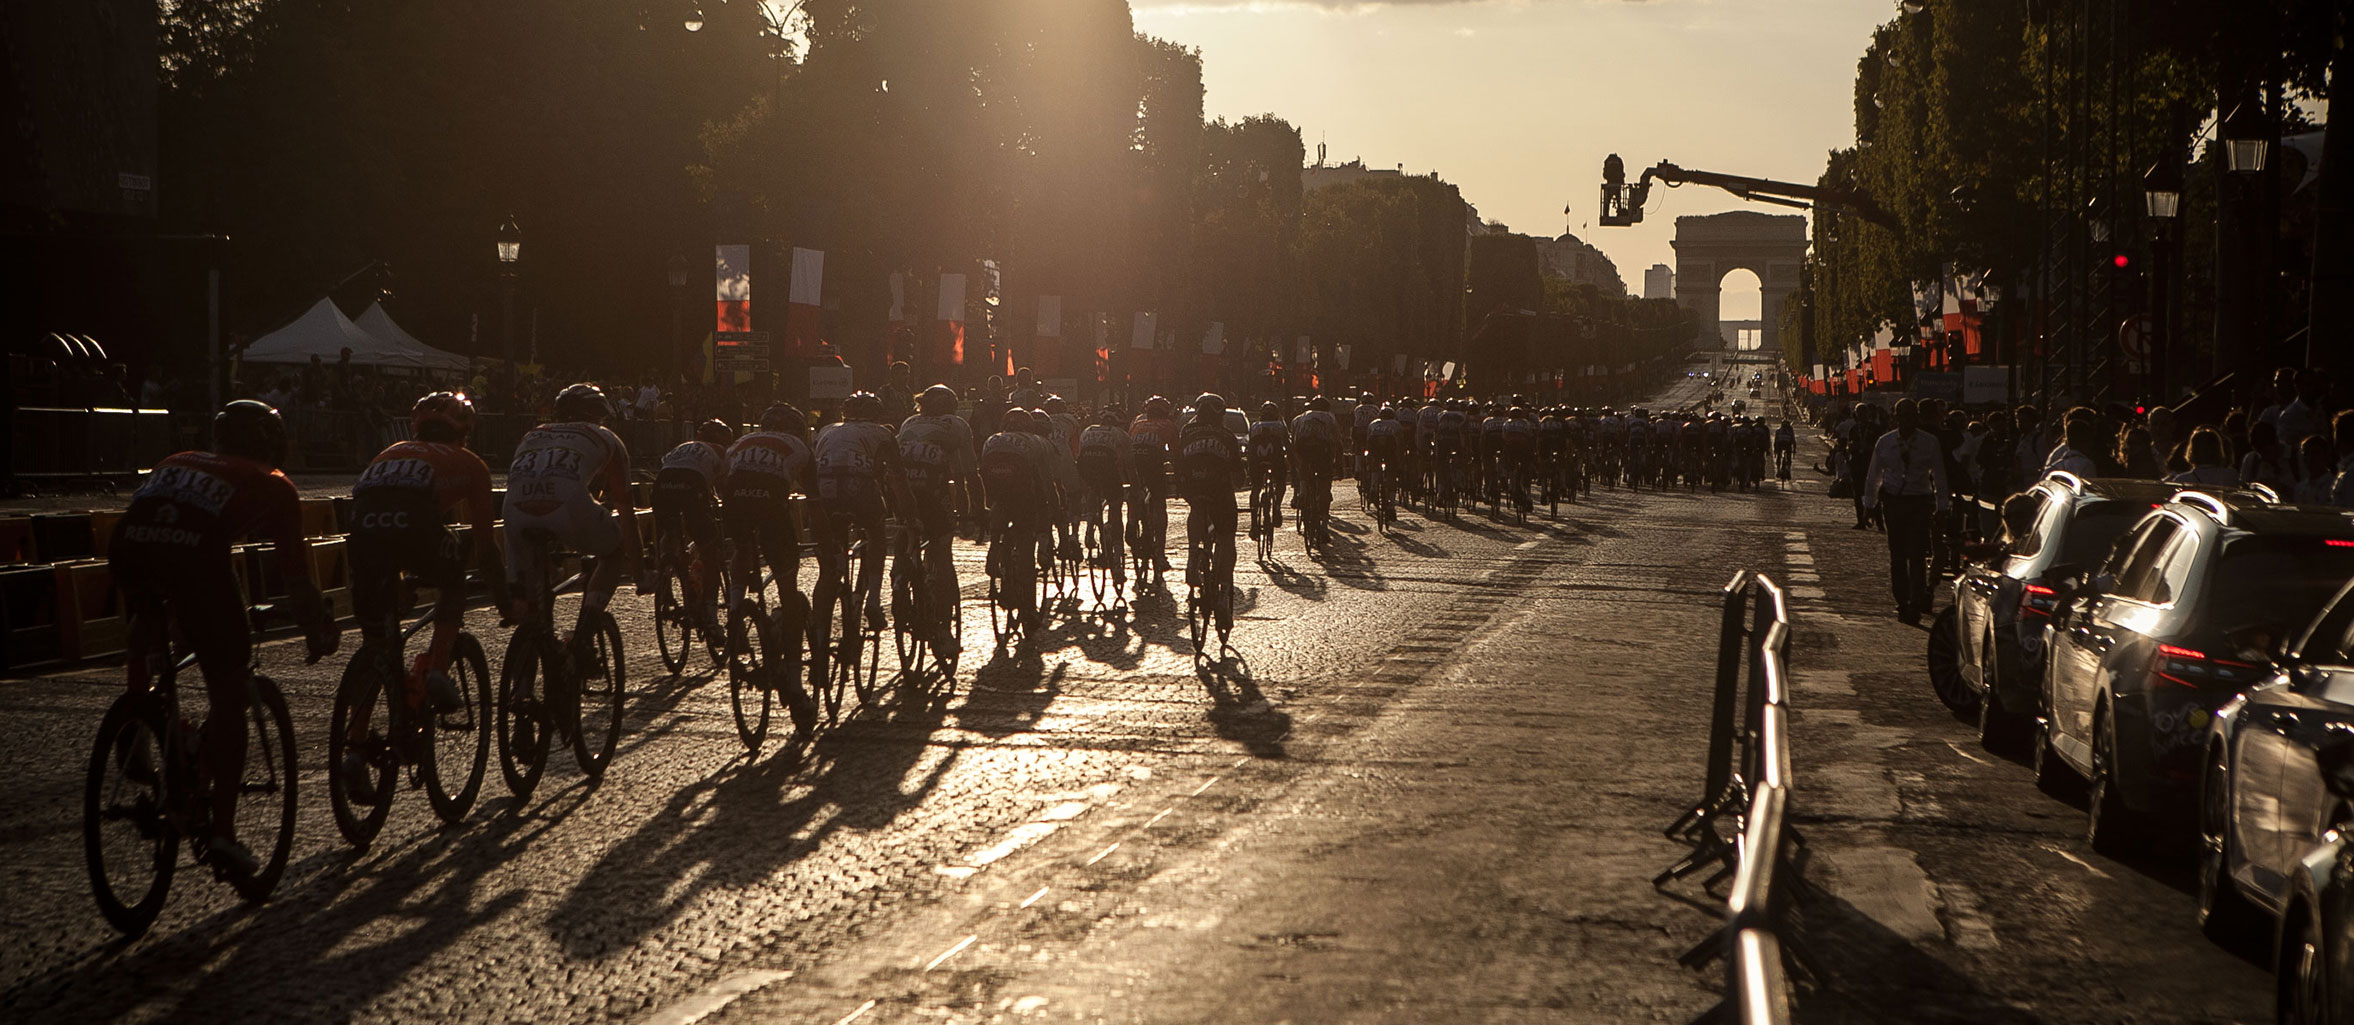 Exposición fotográfica: Tour de France 2019, imágenes inéditas por Pablo Mazuera